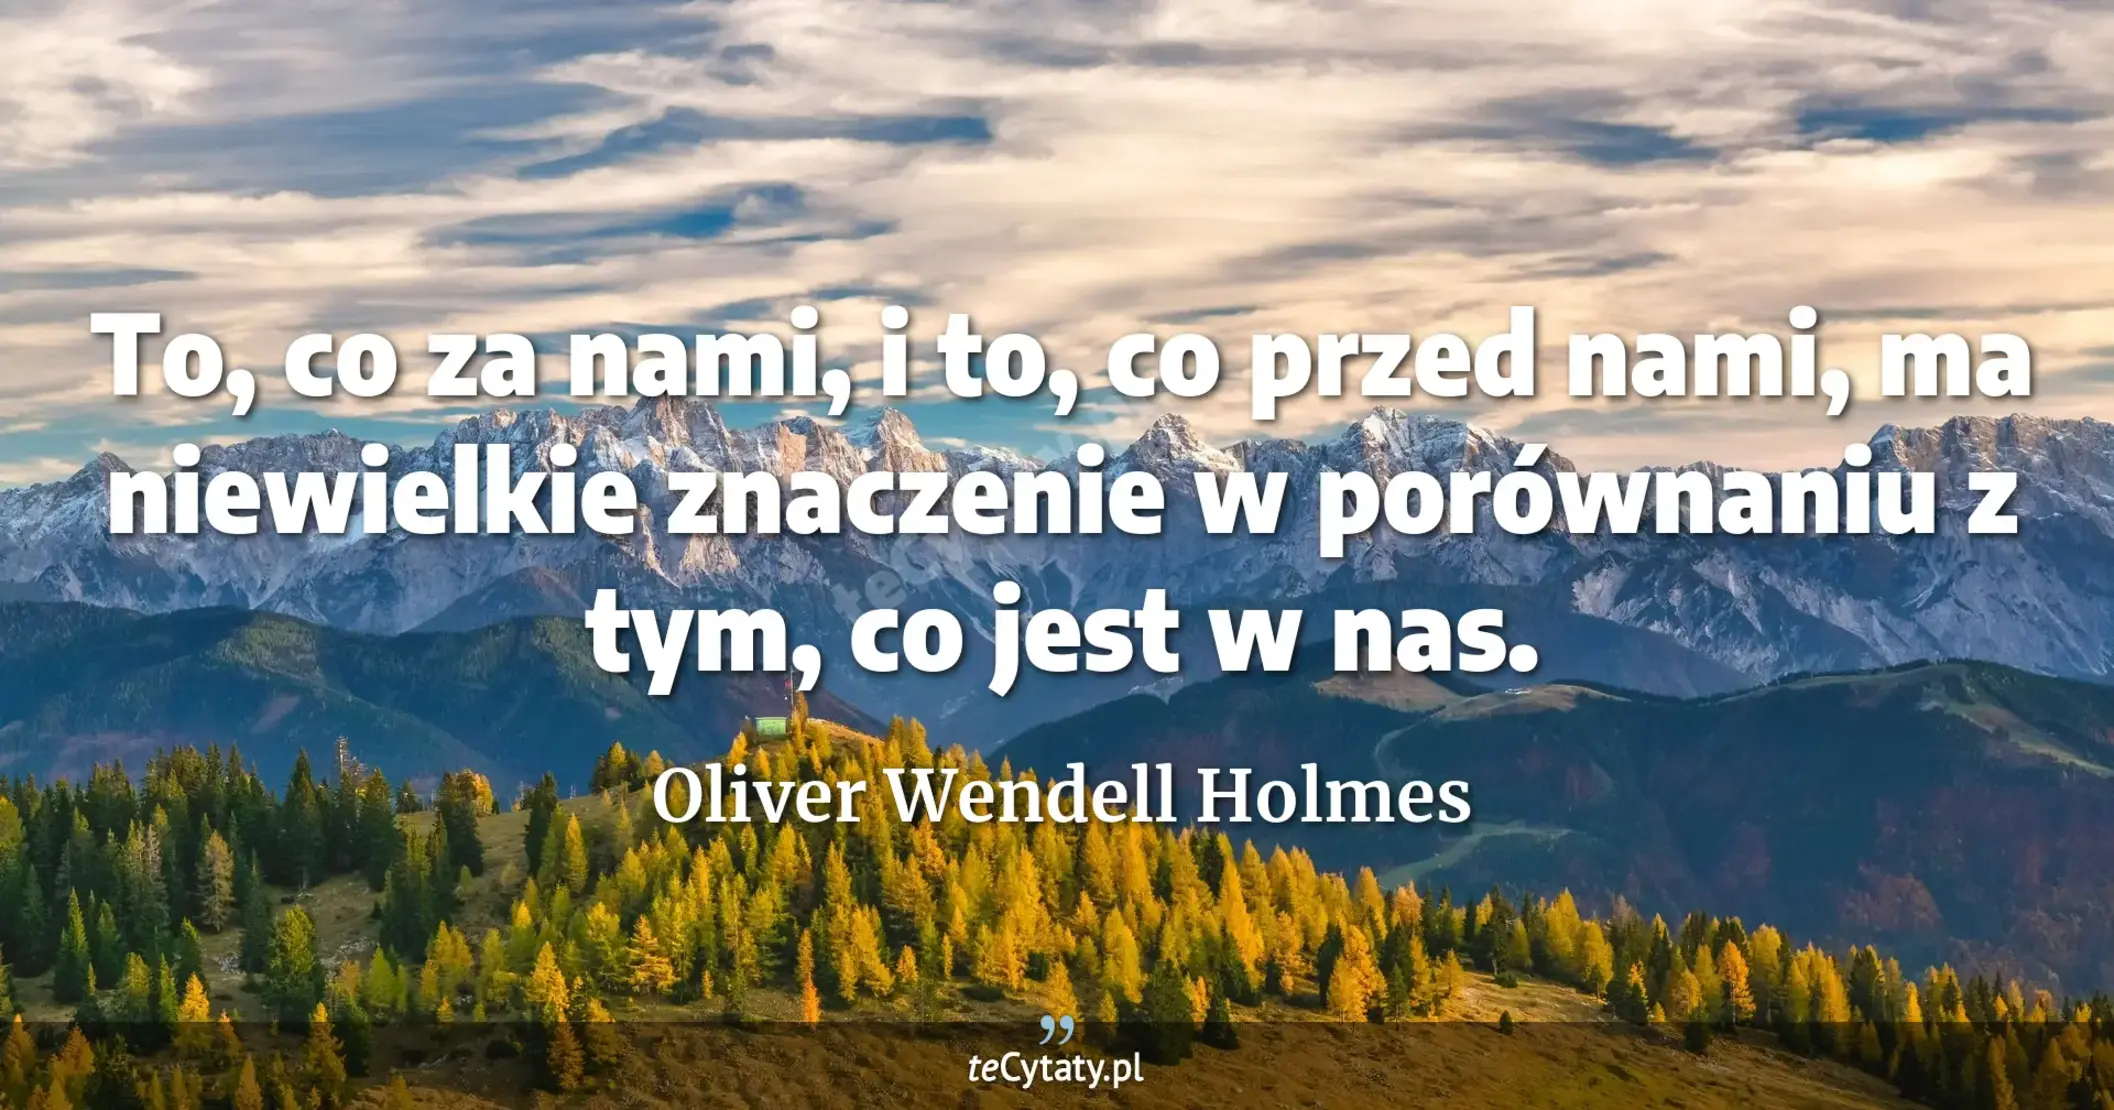 To, co za nami, i to, co przed nami, ma niewielkie znaczenie w porównaniu z tym, co jest w nas. - Oliver Wendell Holmes